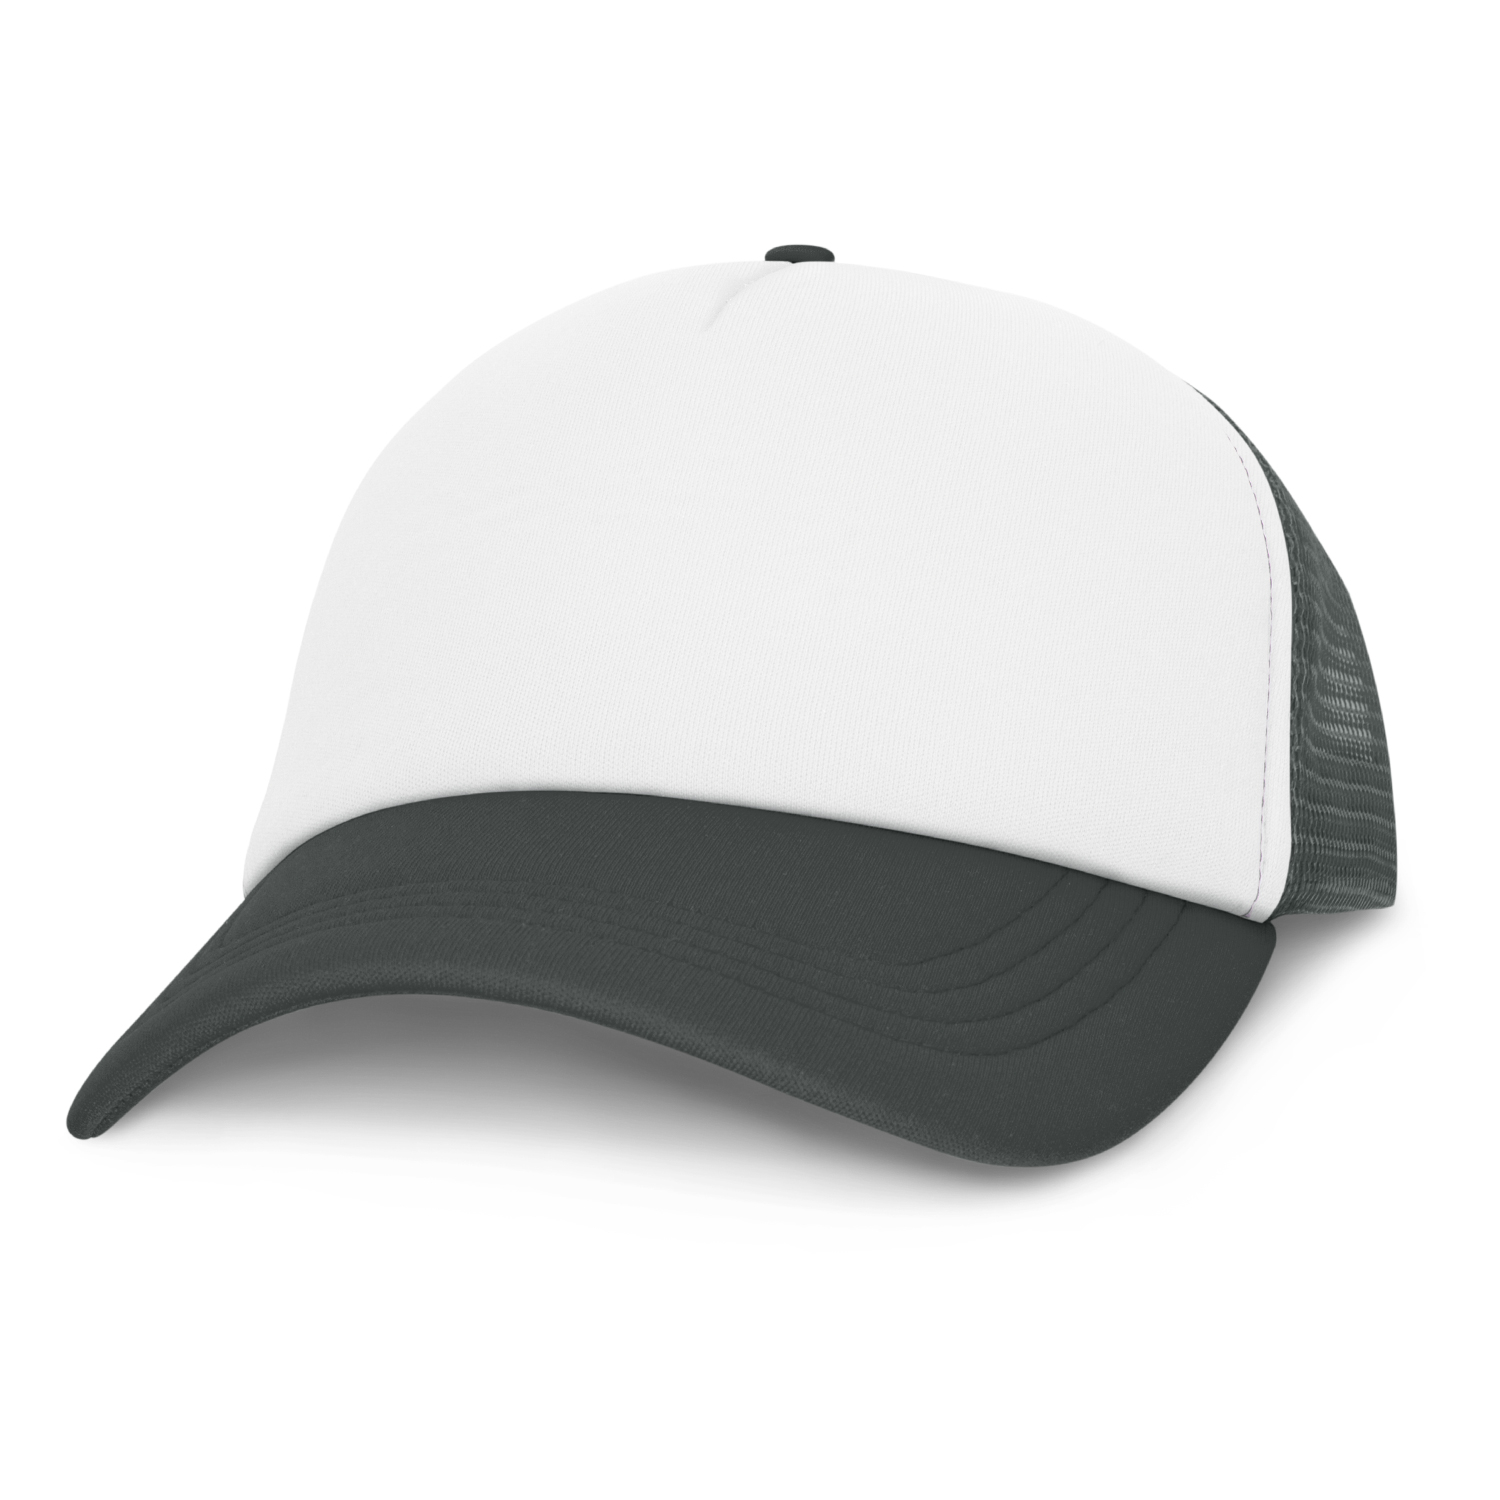 Caps Cruise Mesh Cap – White Front -